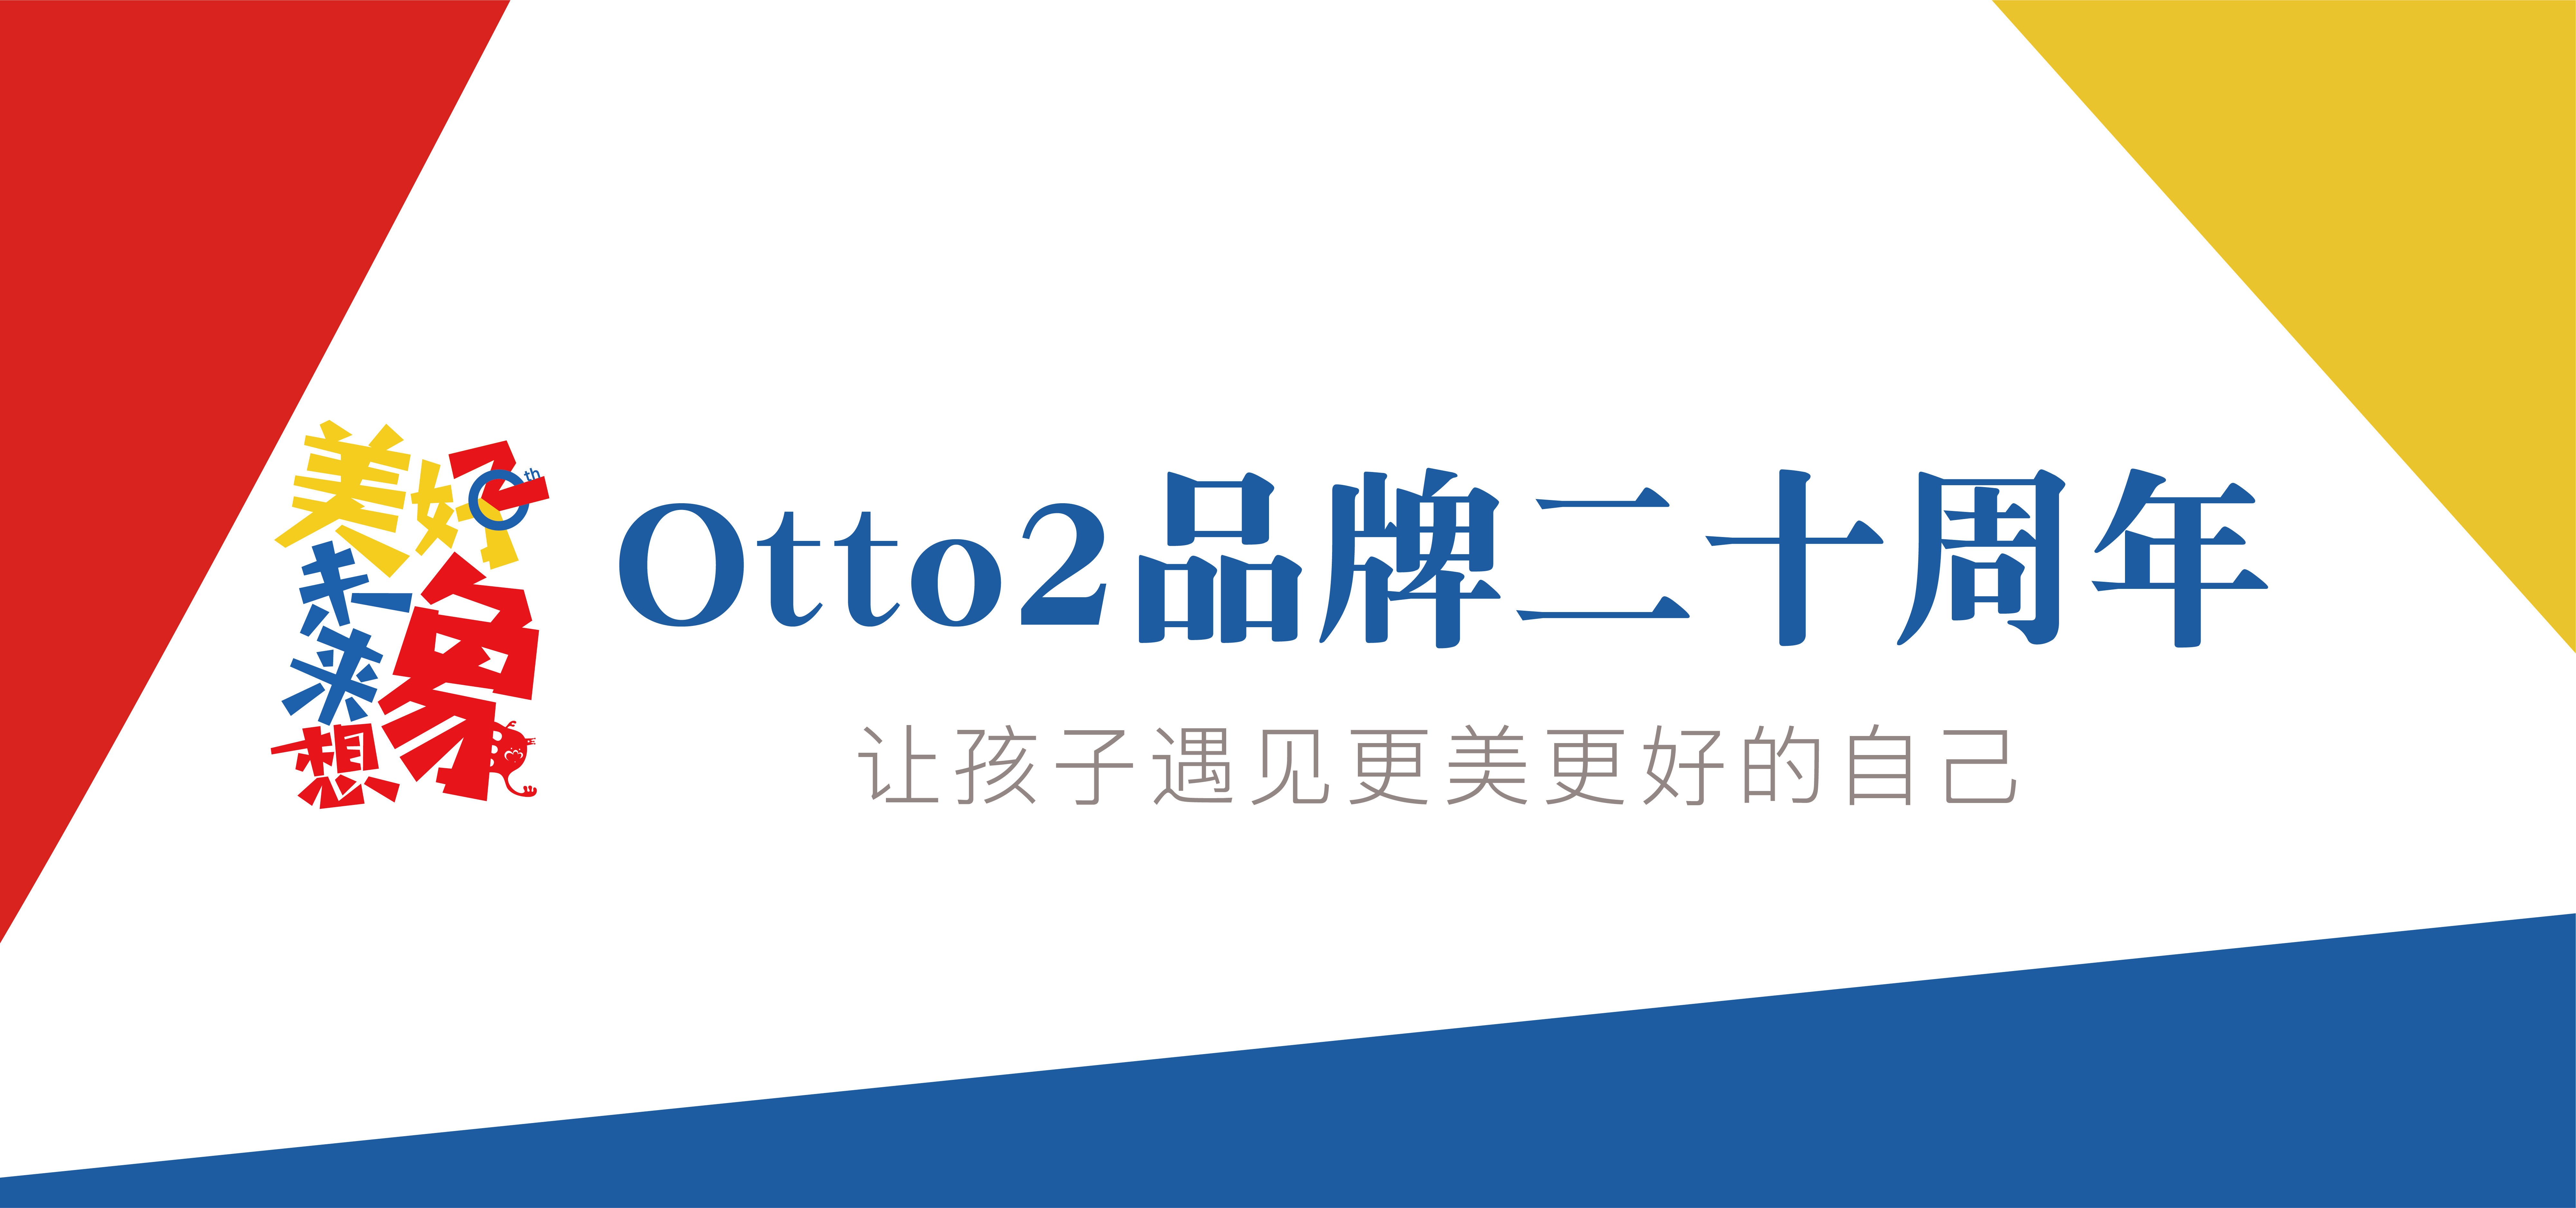 Otto2艺术美学杭州西湖艺术馆